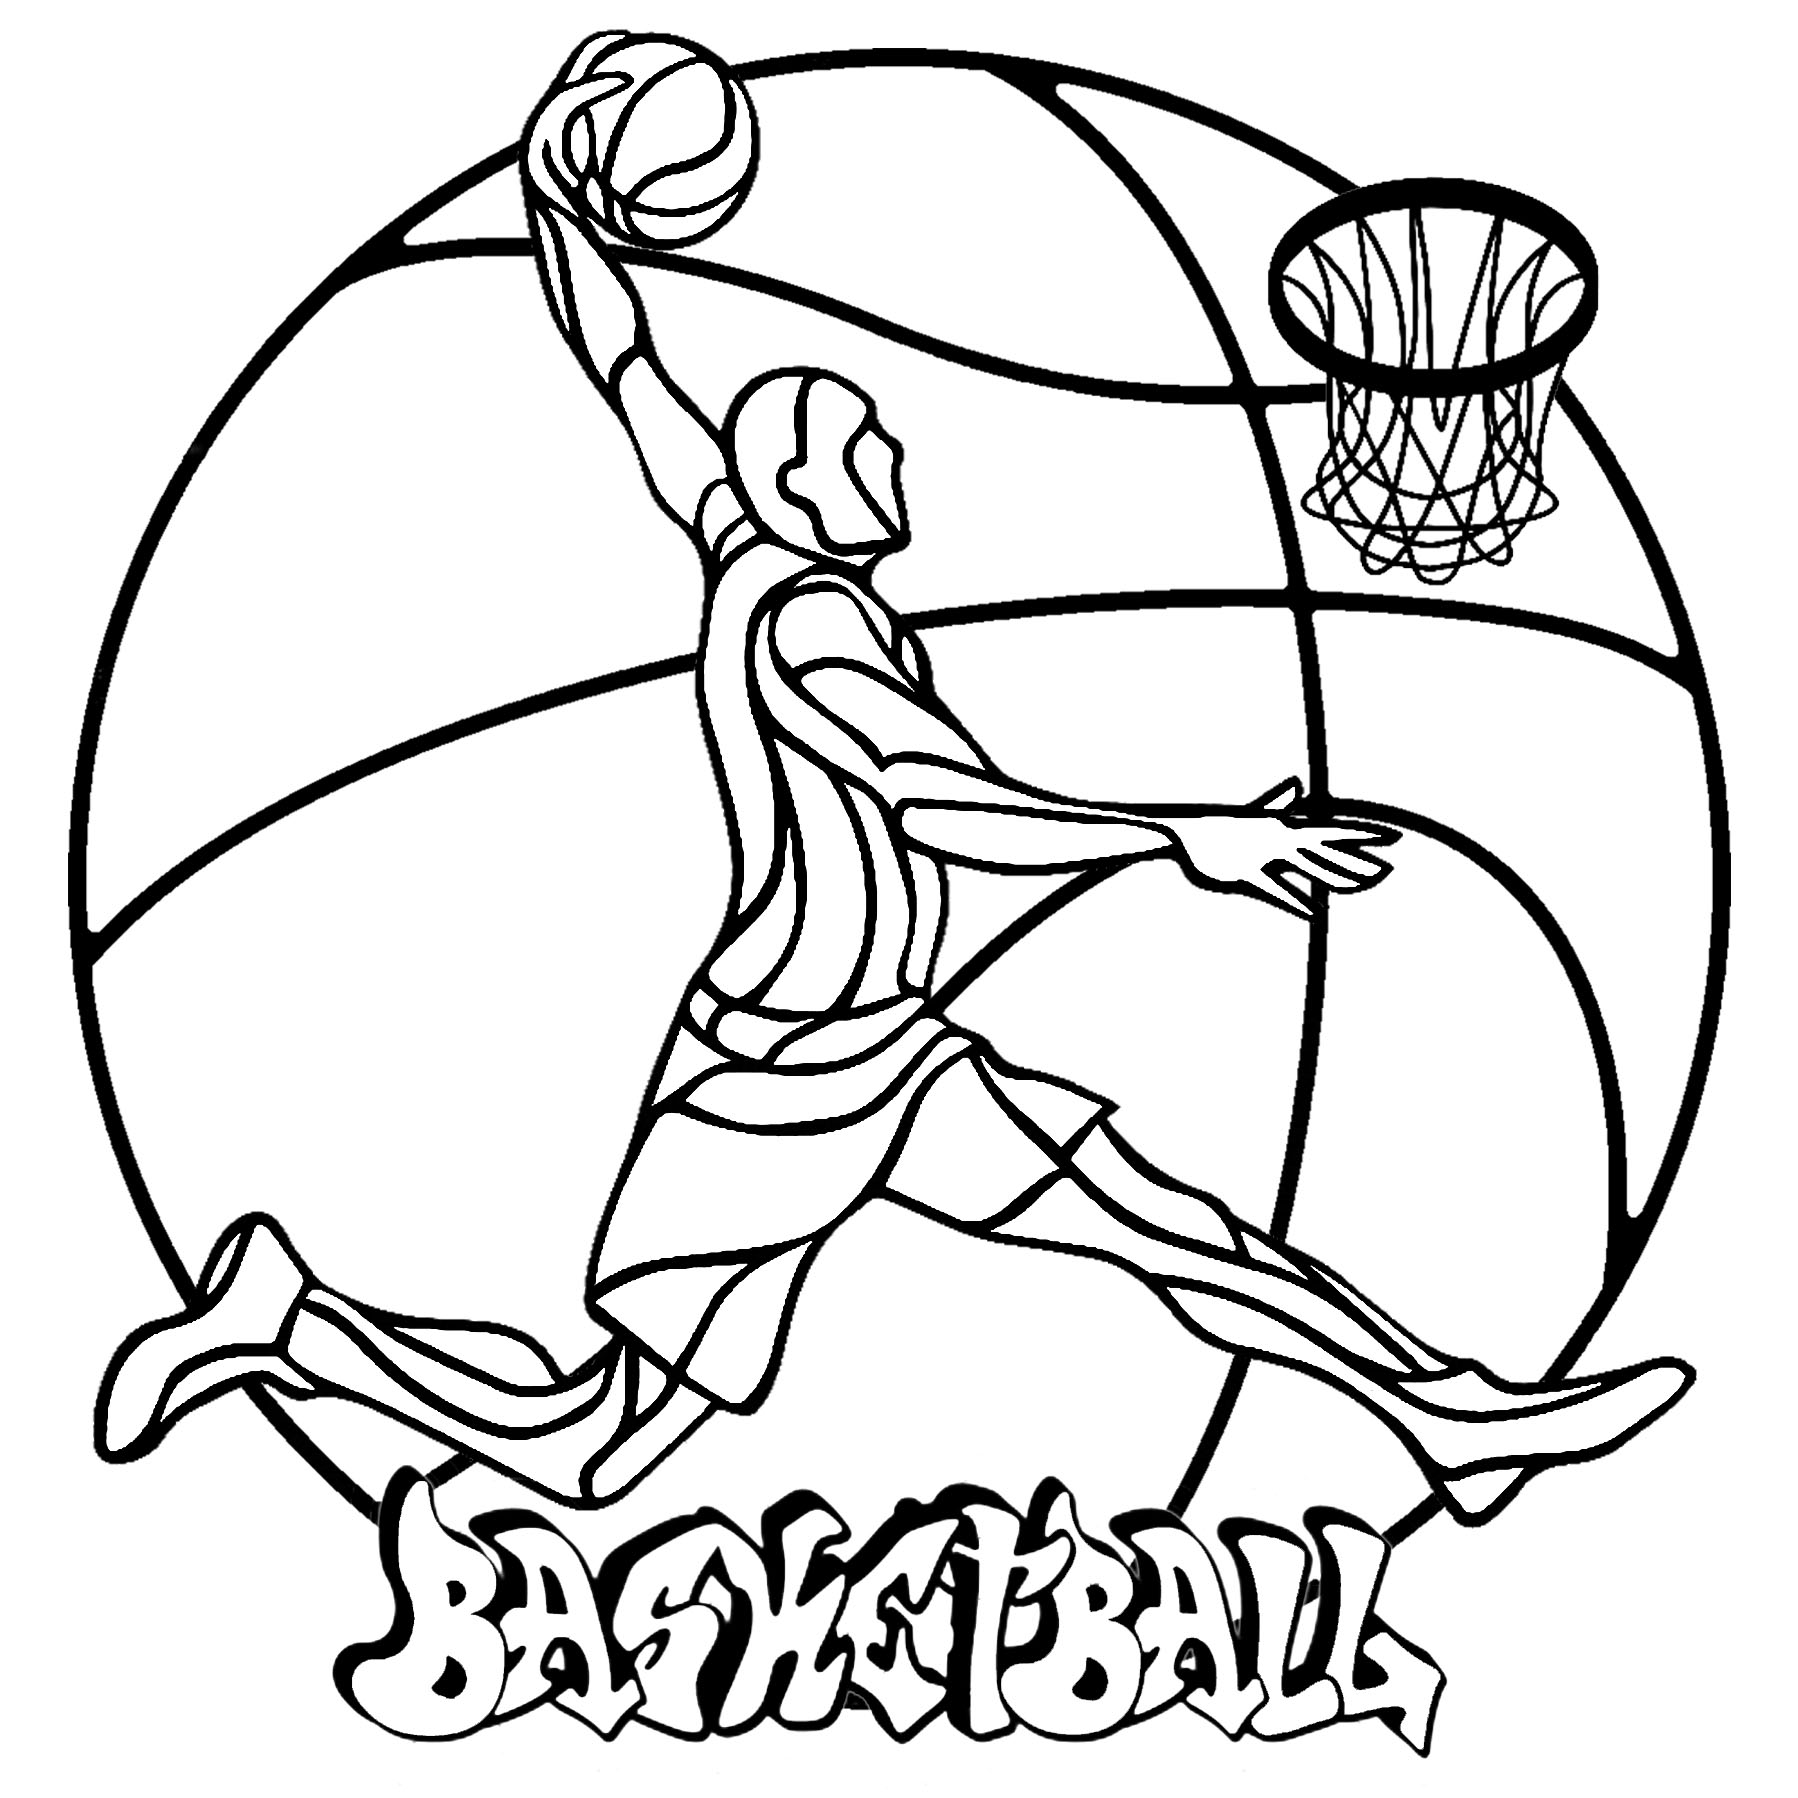 Un semplice mandala sul tema della pallacanestro, con un giocatore di basket, una palla, un canestro e un'etichetta 'Basketball', Artista : Art'Isabelle